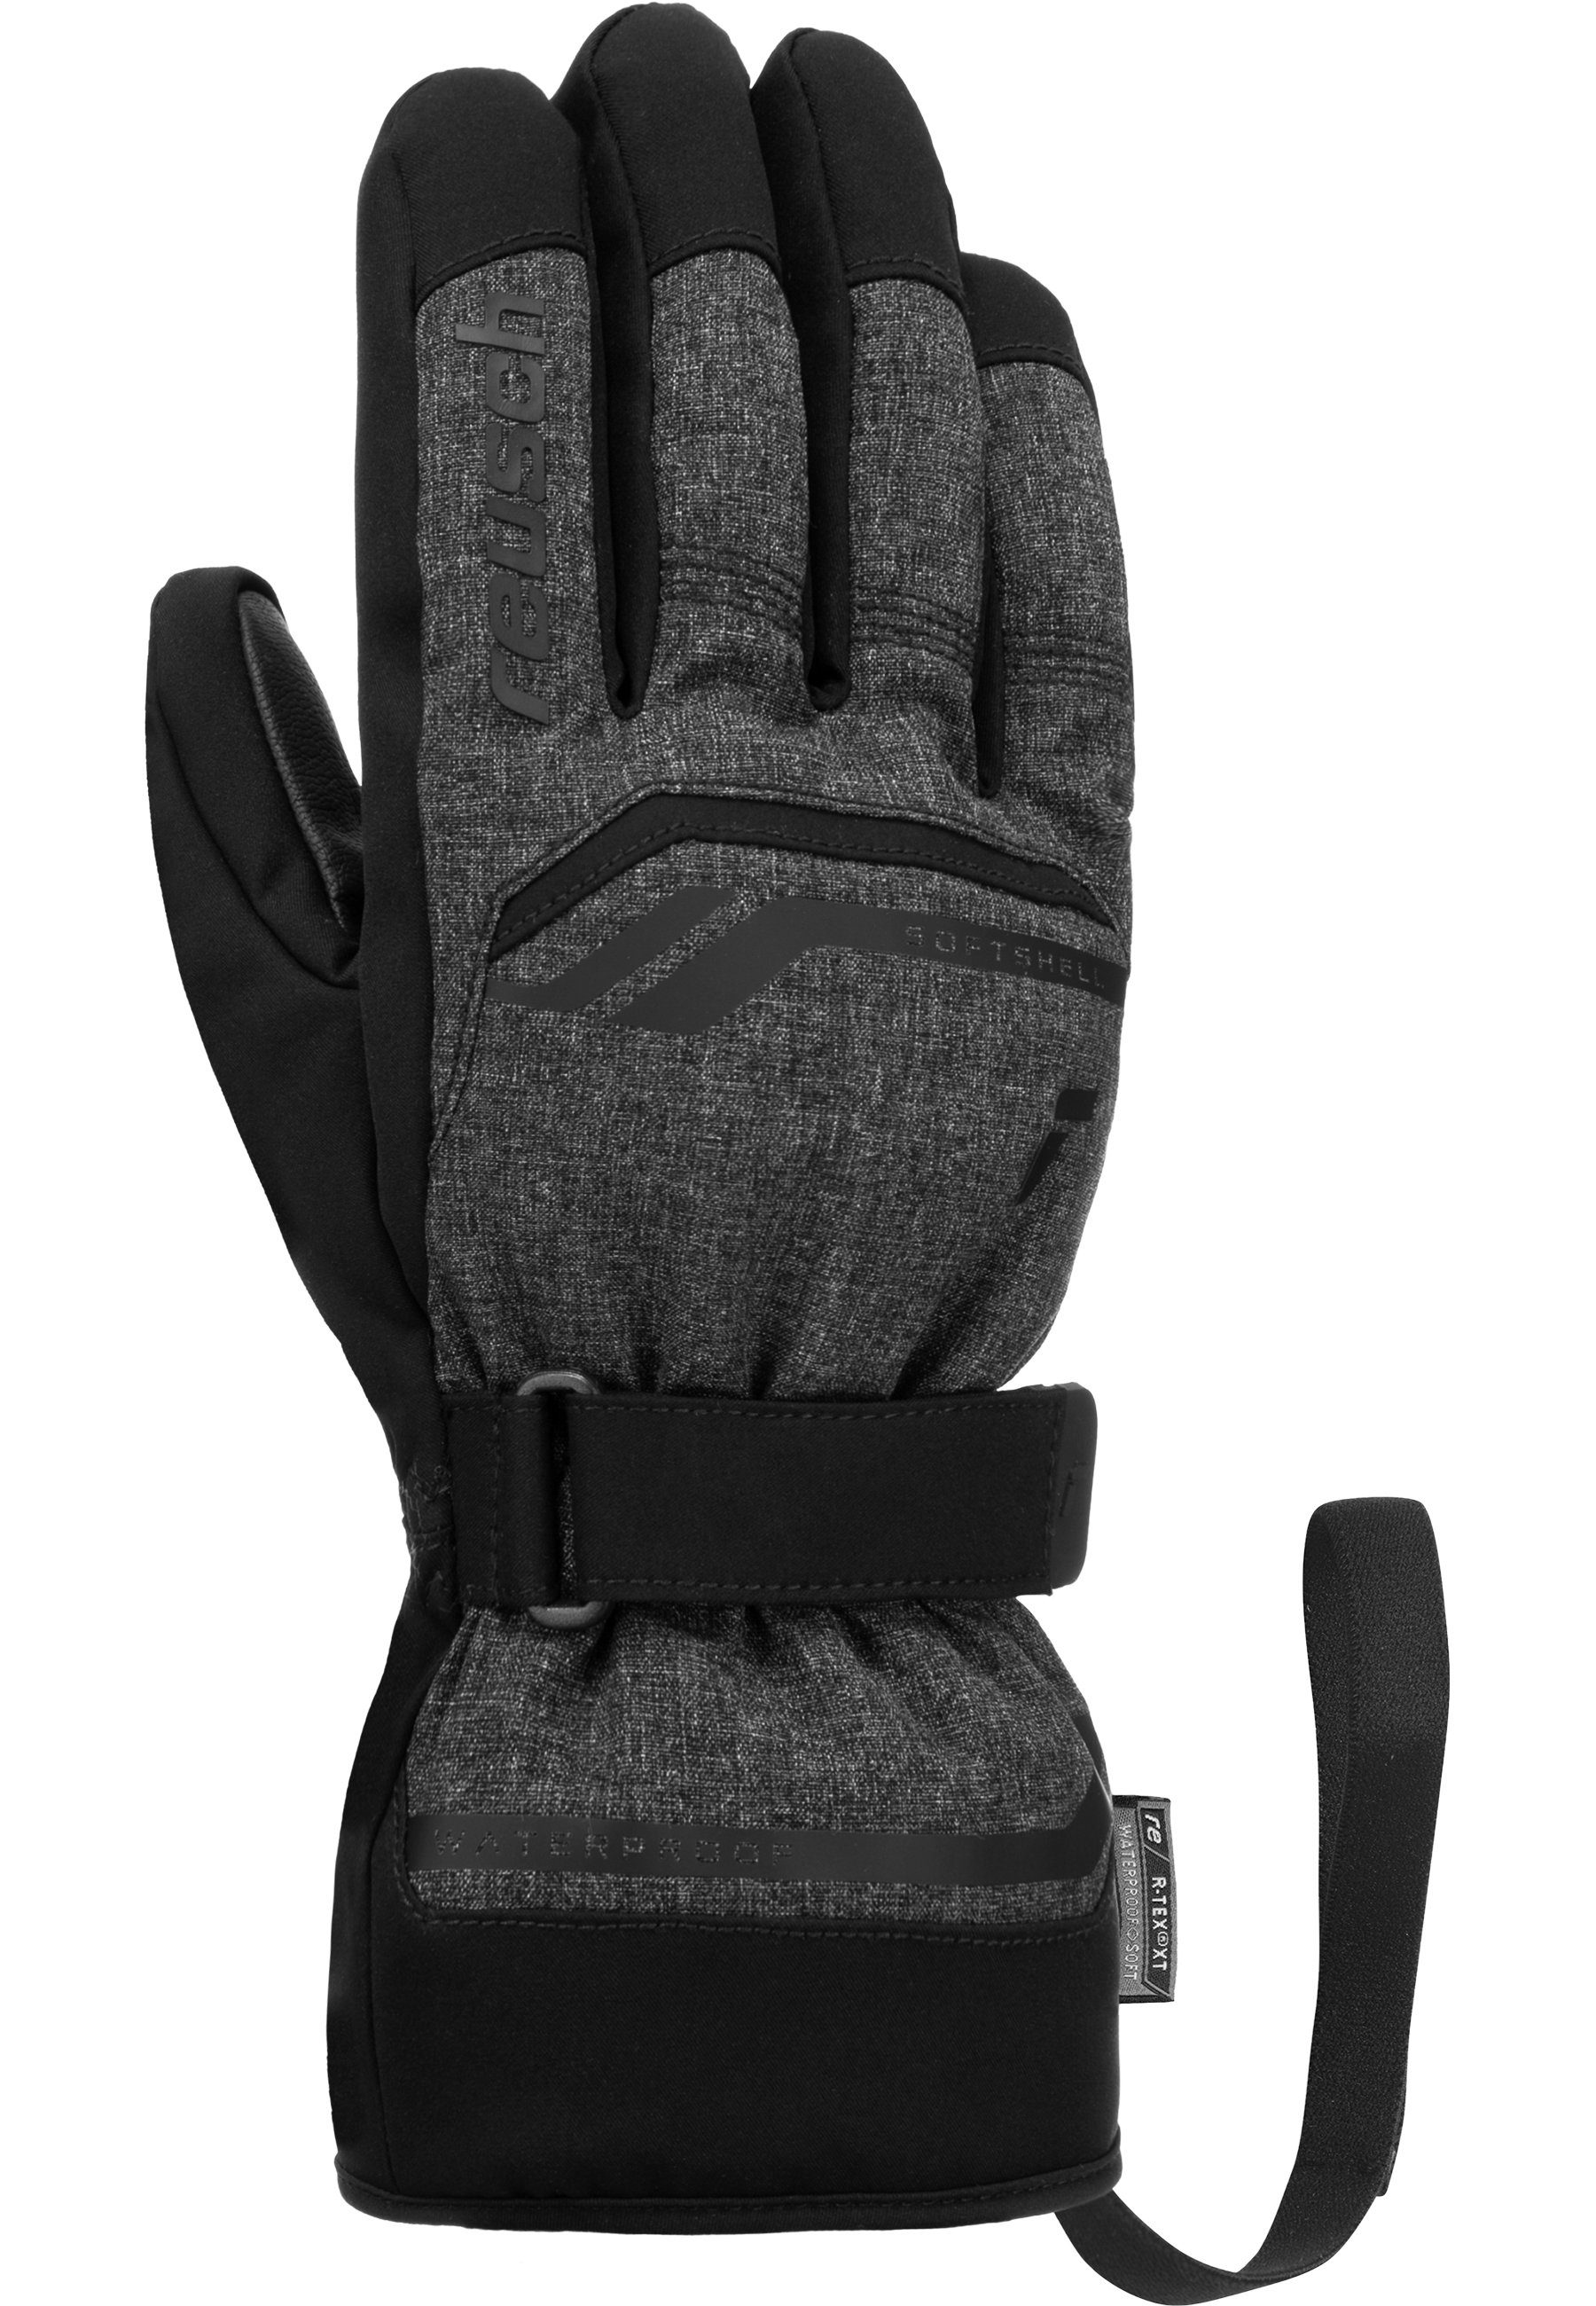 Reusch Skihandschuhe Primus R-TEX® sehr und dunkelgrau-schwarz warm, atmungsaktiv XT wasserdicht